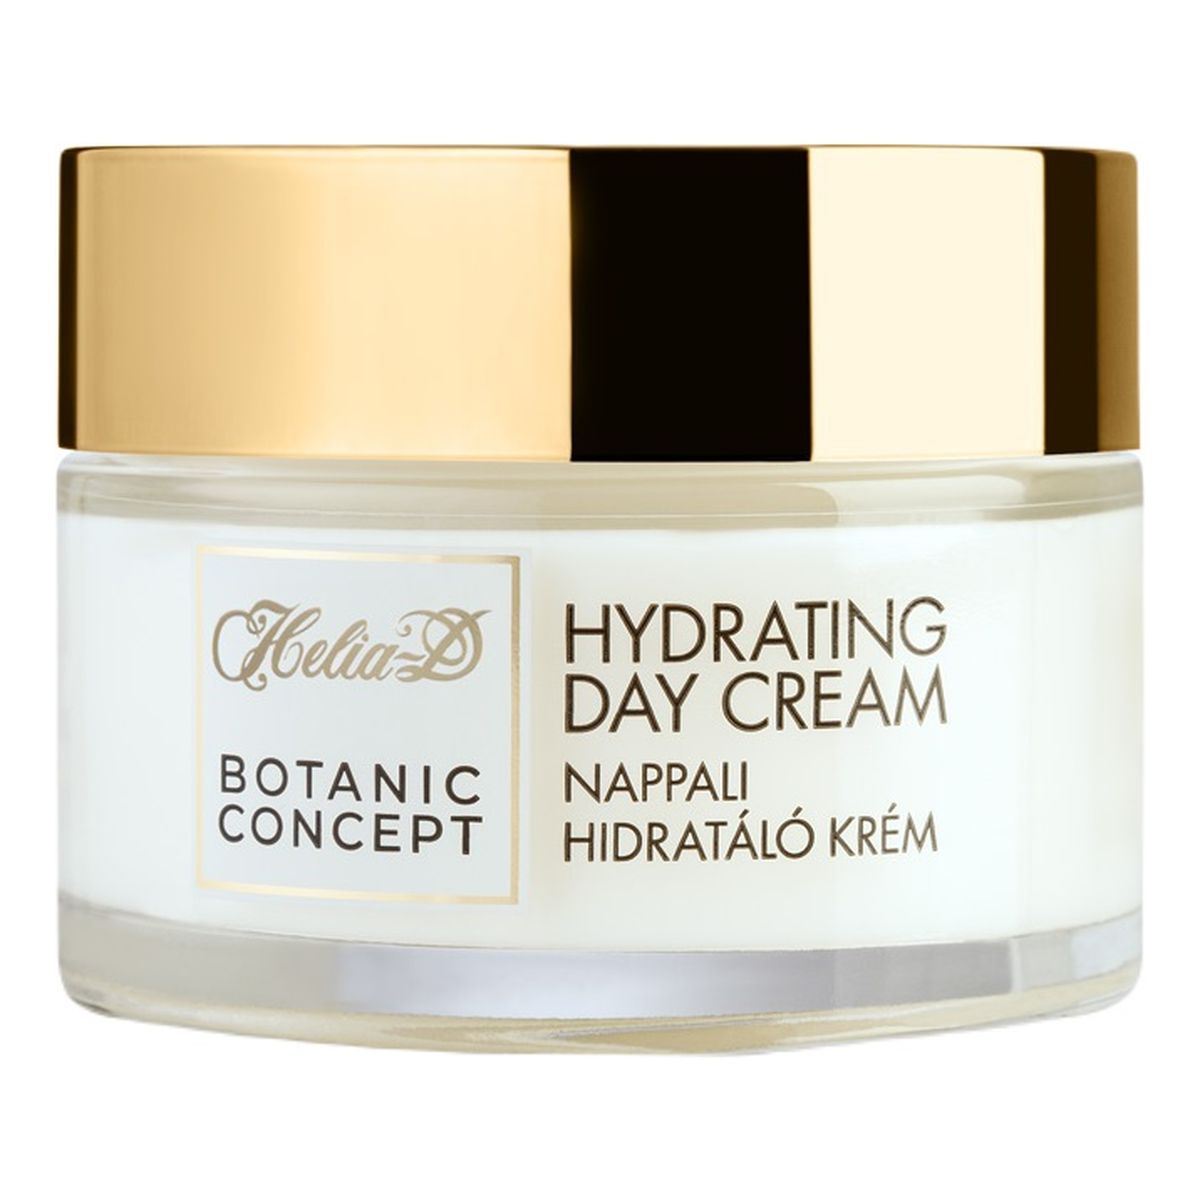 Helia-D Botanic Concept Hydrating Day Cream nawilżający Krem na dzień do cery wrażliwej 50ml